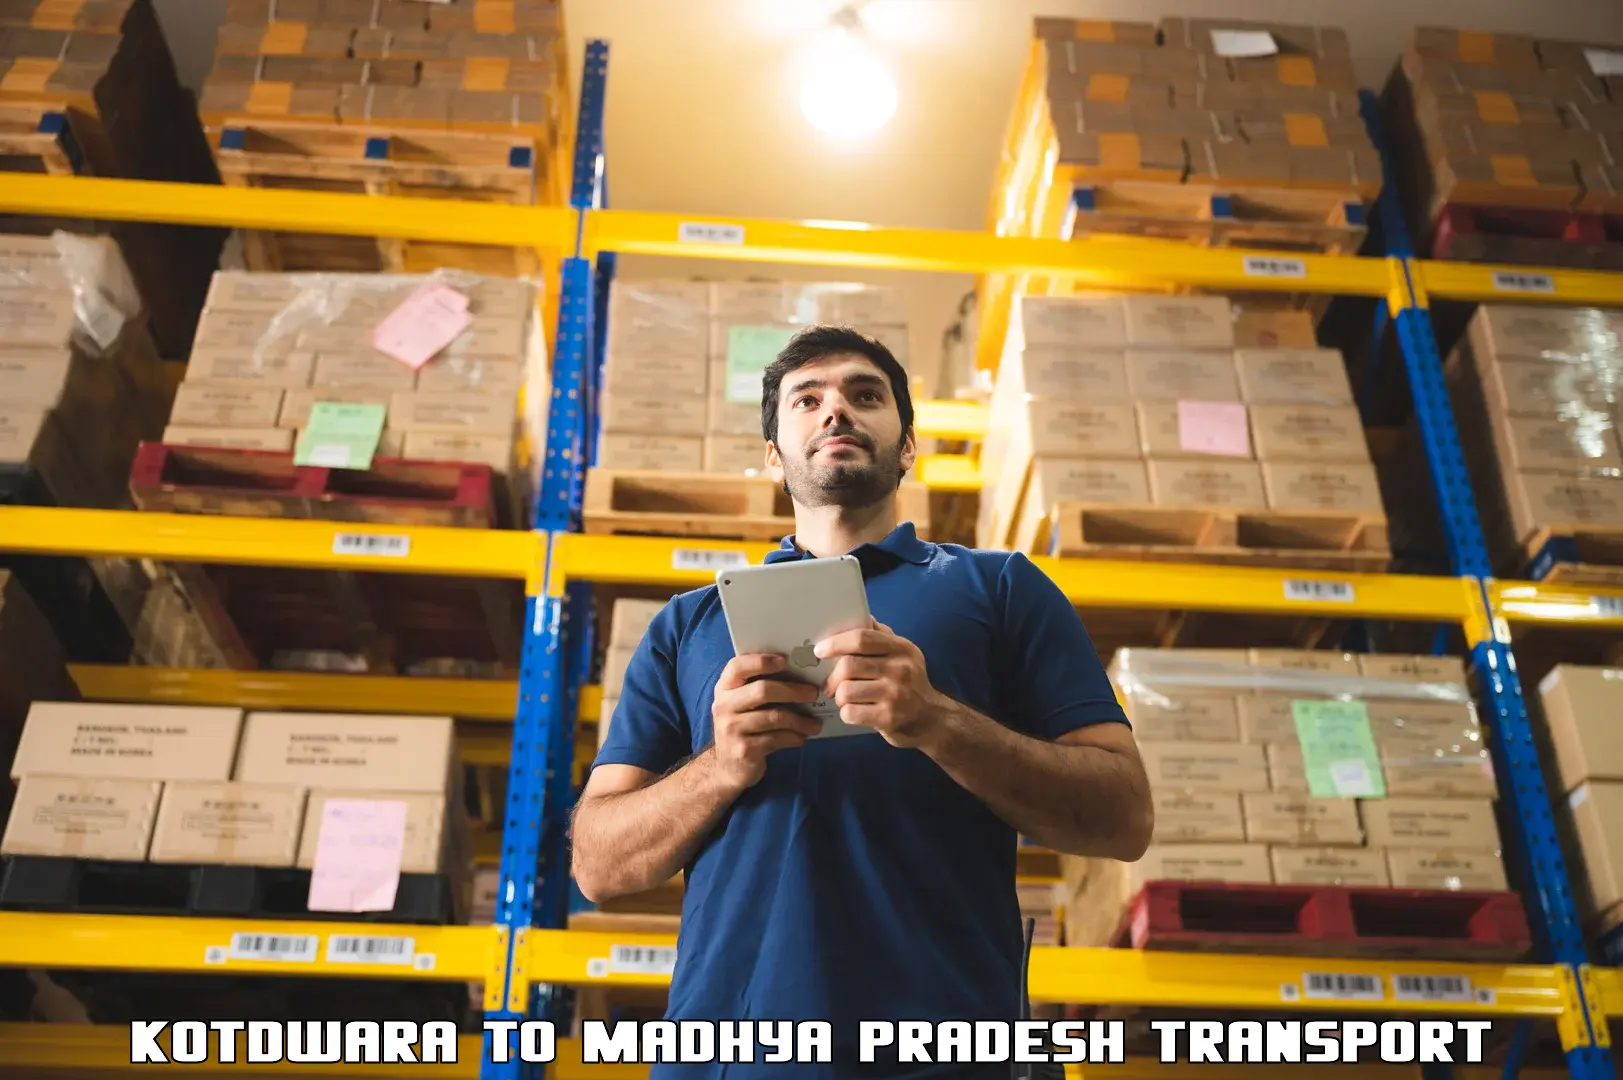 International cargo transportation services Kotdwara to Amarwara